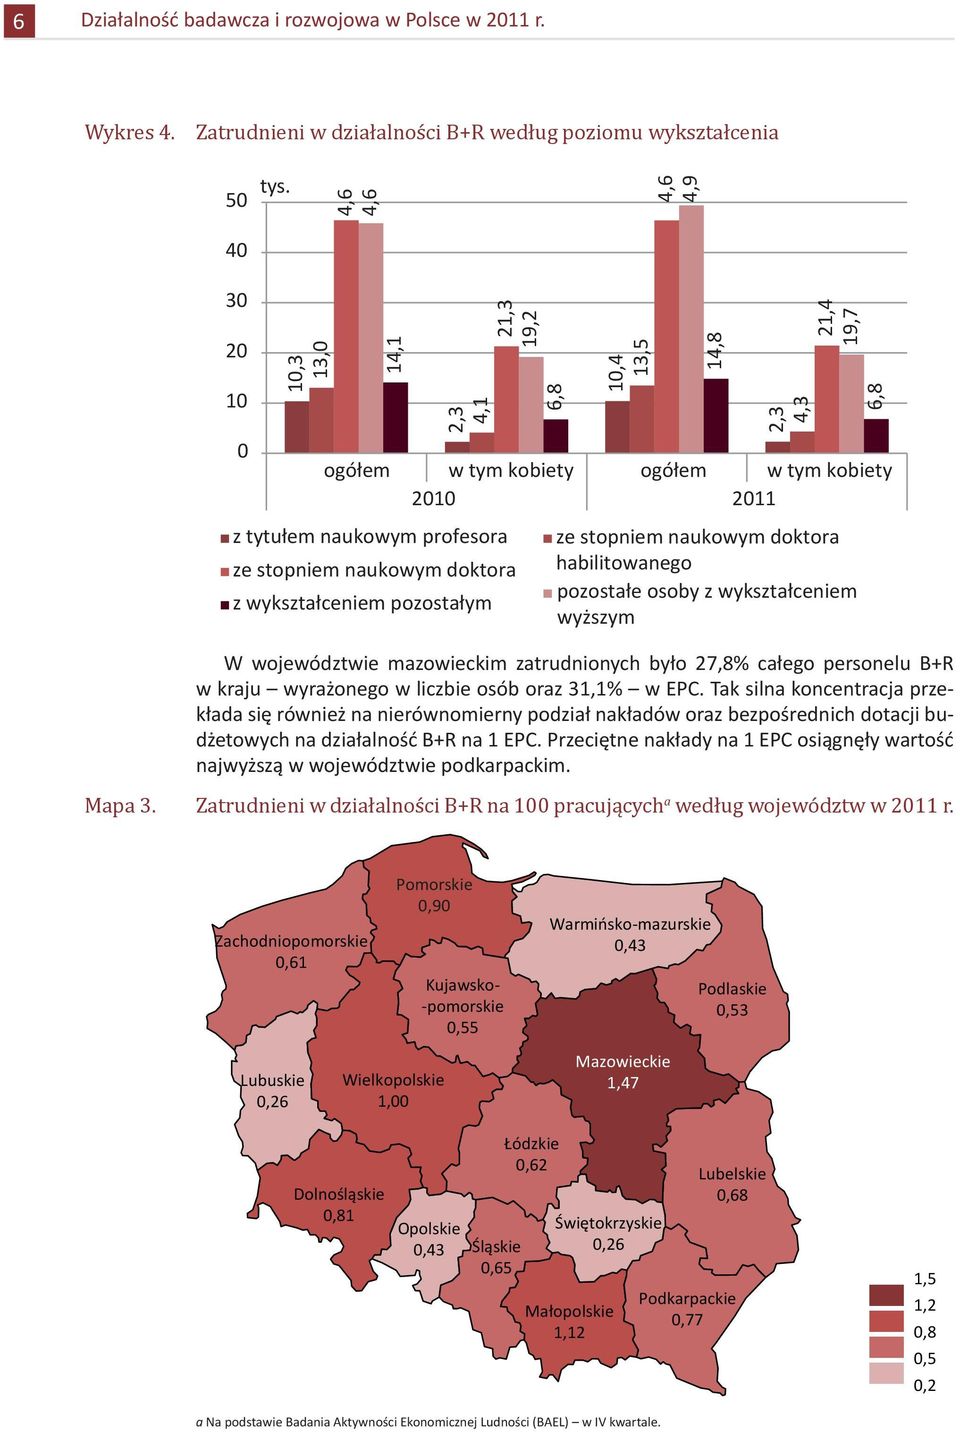 naukowym doktora z wykształceniem pozostałym ze stopniem naukowym doktora habilitowanego pozostałe osoby z wykształceniem wyższym W województwie mazowieckim zatrudnionych było 27,8% całego personelu